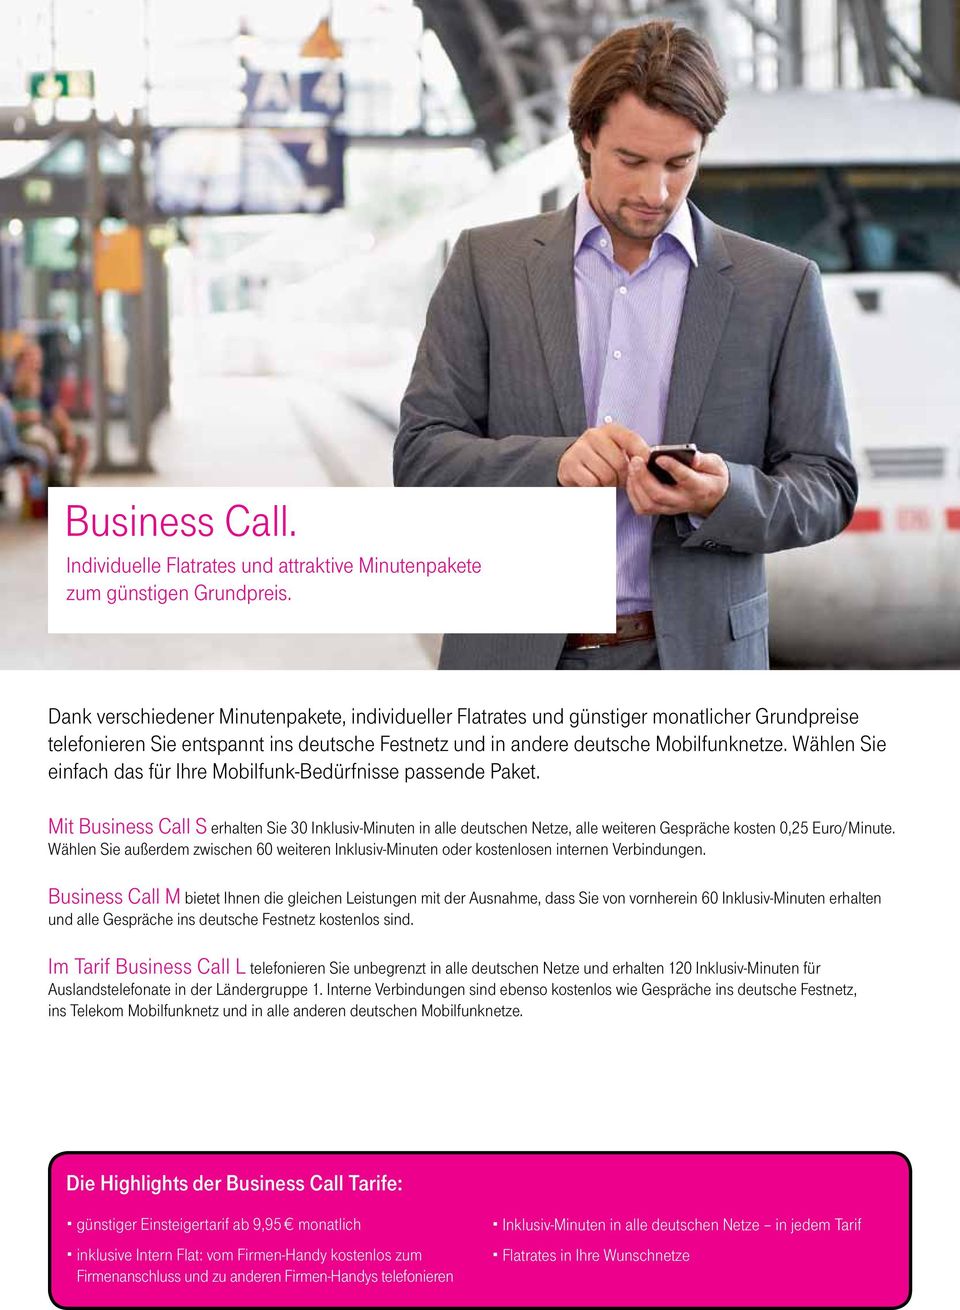 Wählen Sie einfach das für Ihre Mobilfunk-Bedürfnisse passende Paket. Mit Business Call S erhalten Sie 30 Inklusiv-Minuten in alle deutschen Netze, alle weiteren Gespräche kosten 0,25 Euro/Minute.